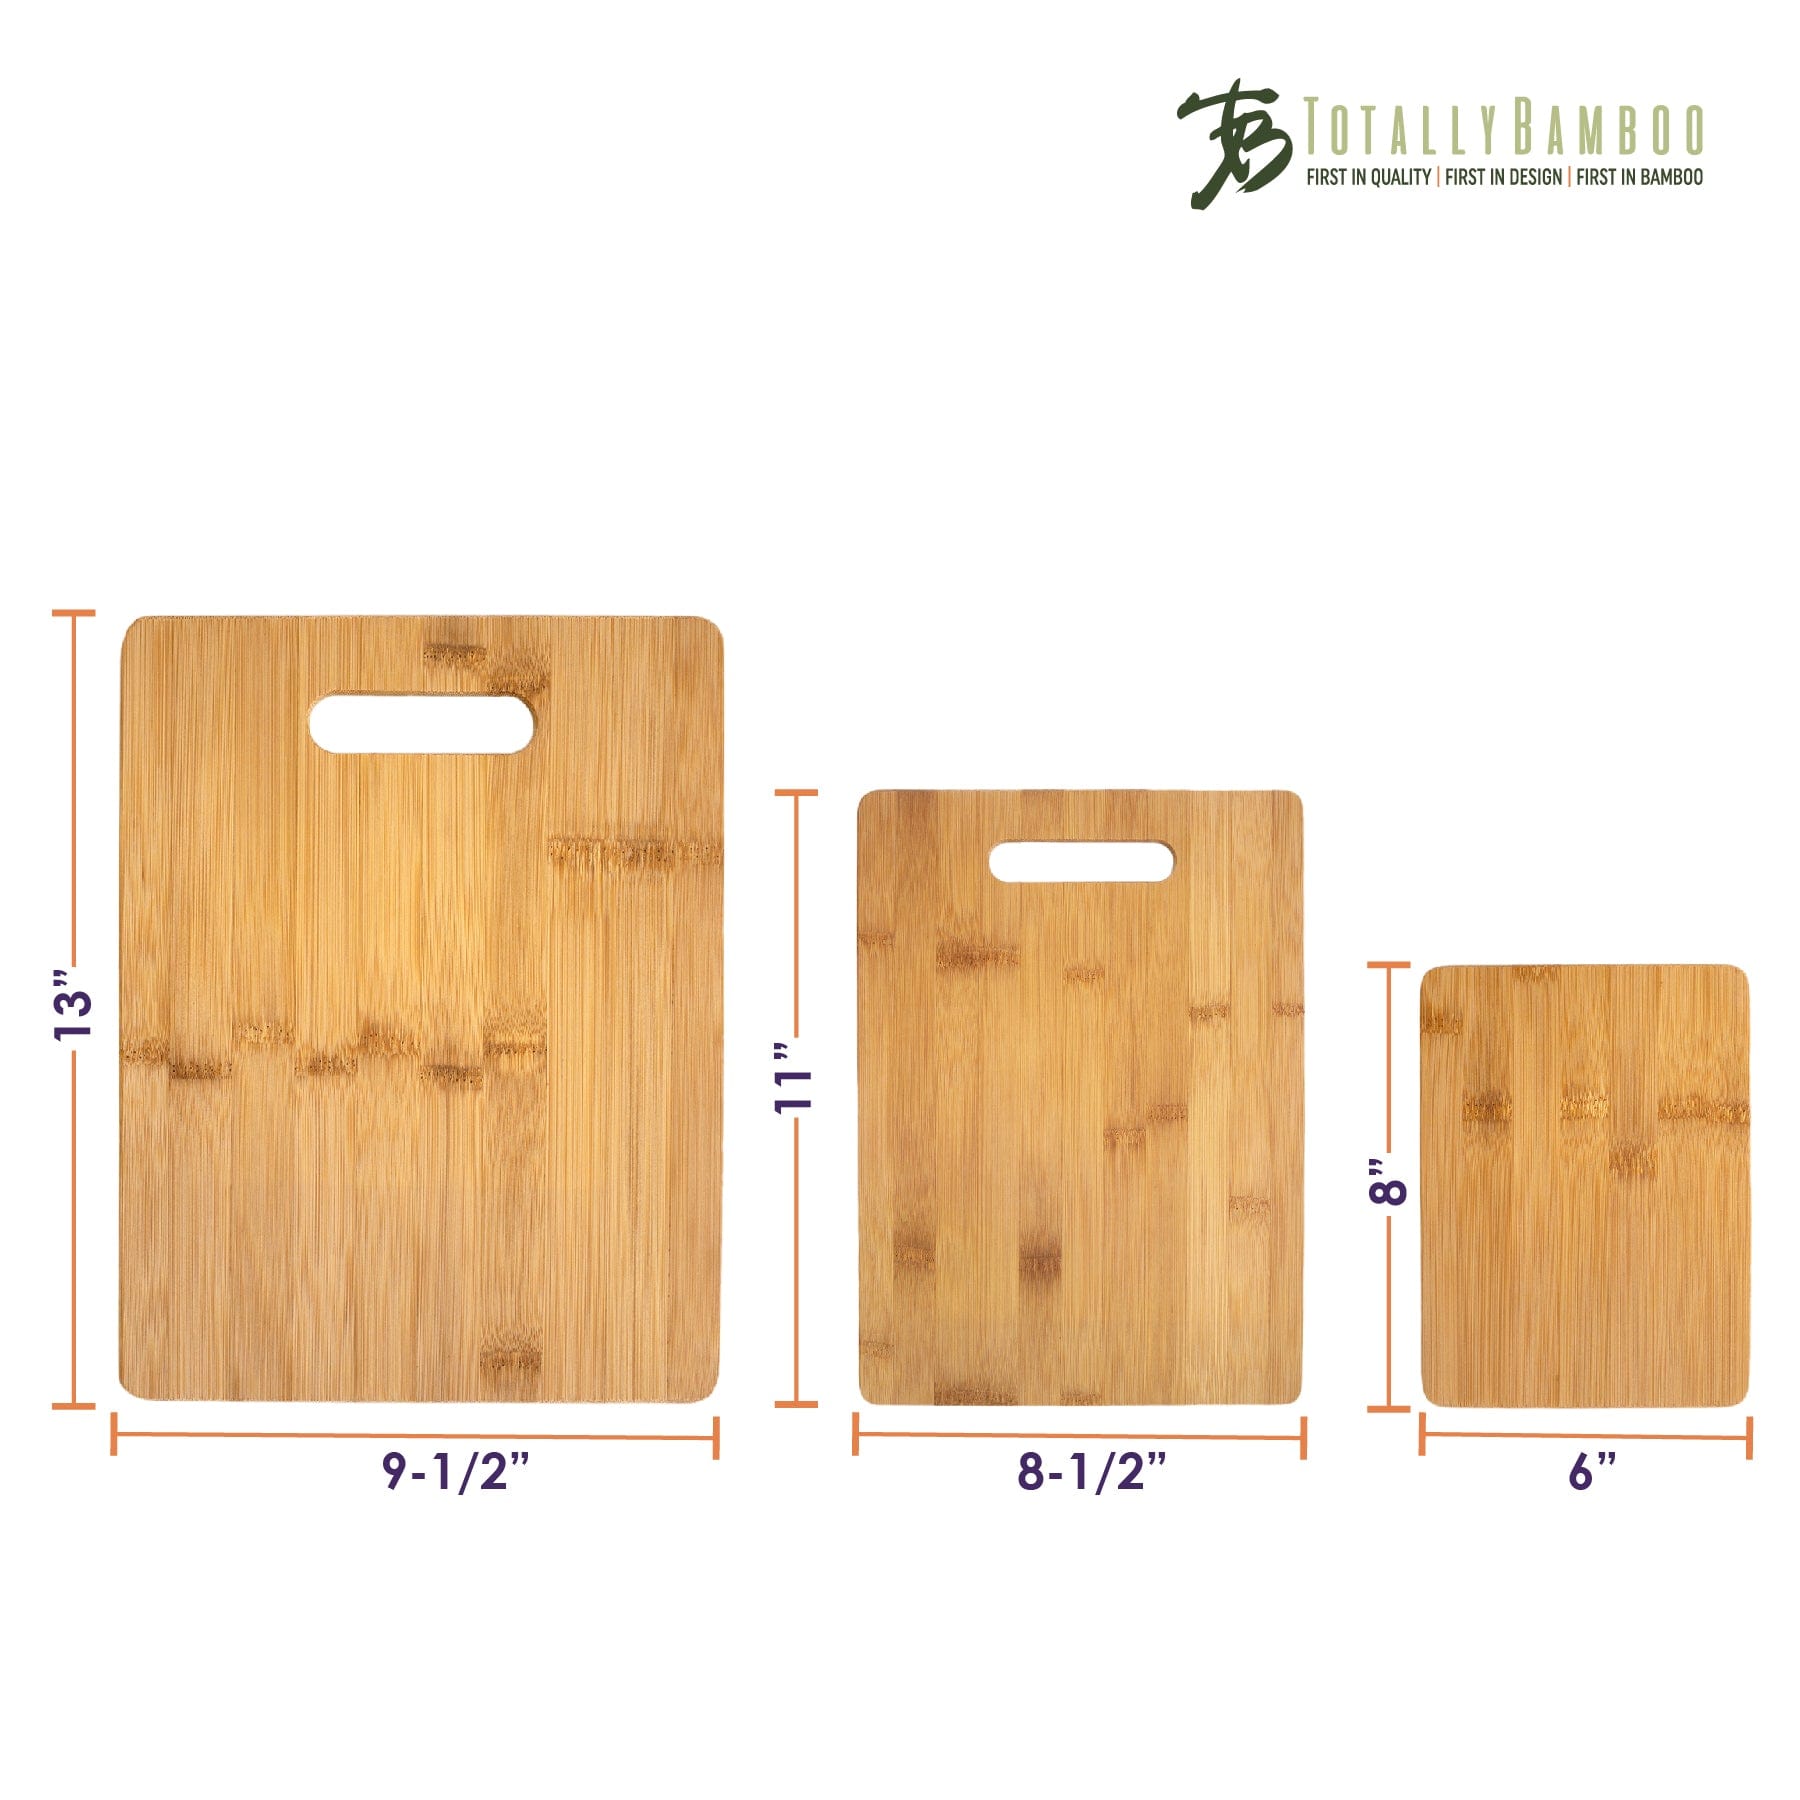 Choice 10 x 6 x 1/2 White Polyethylene Cutting Board